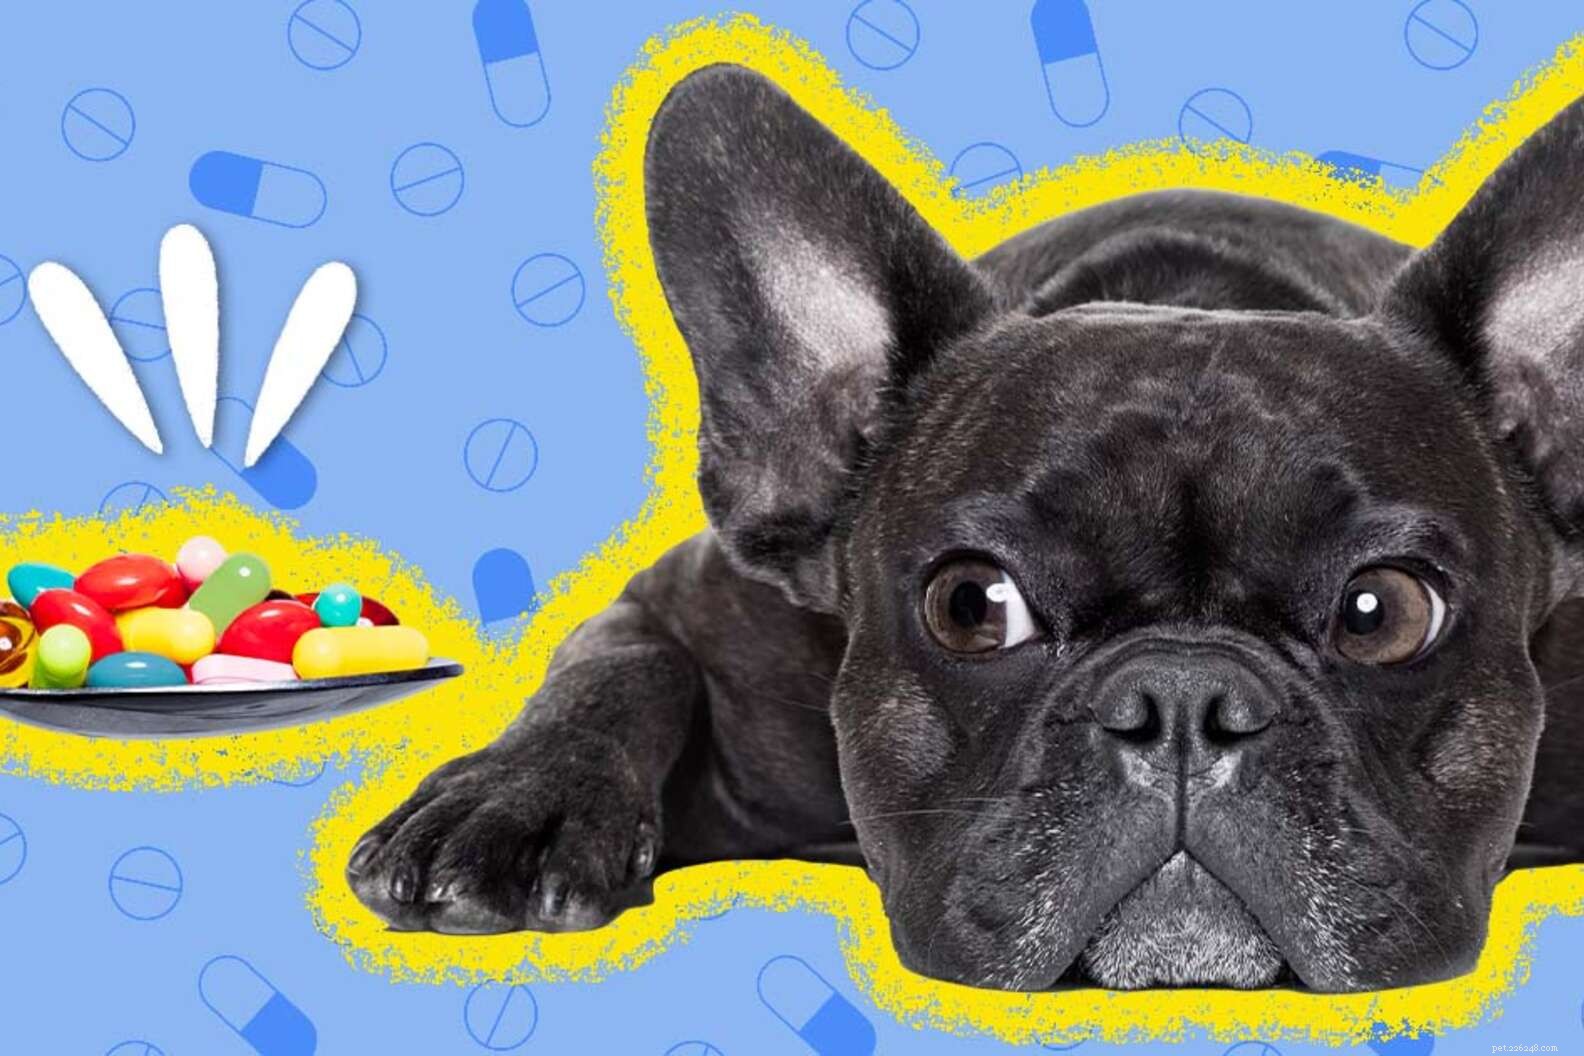 Работают ли лекарства от беспокойства у собак?